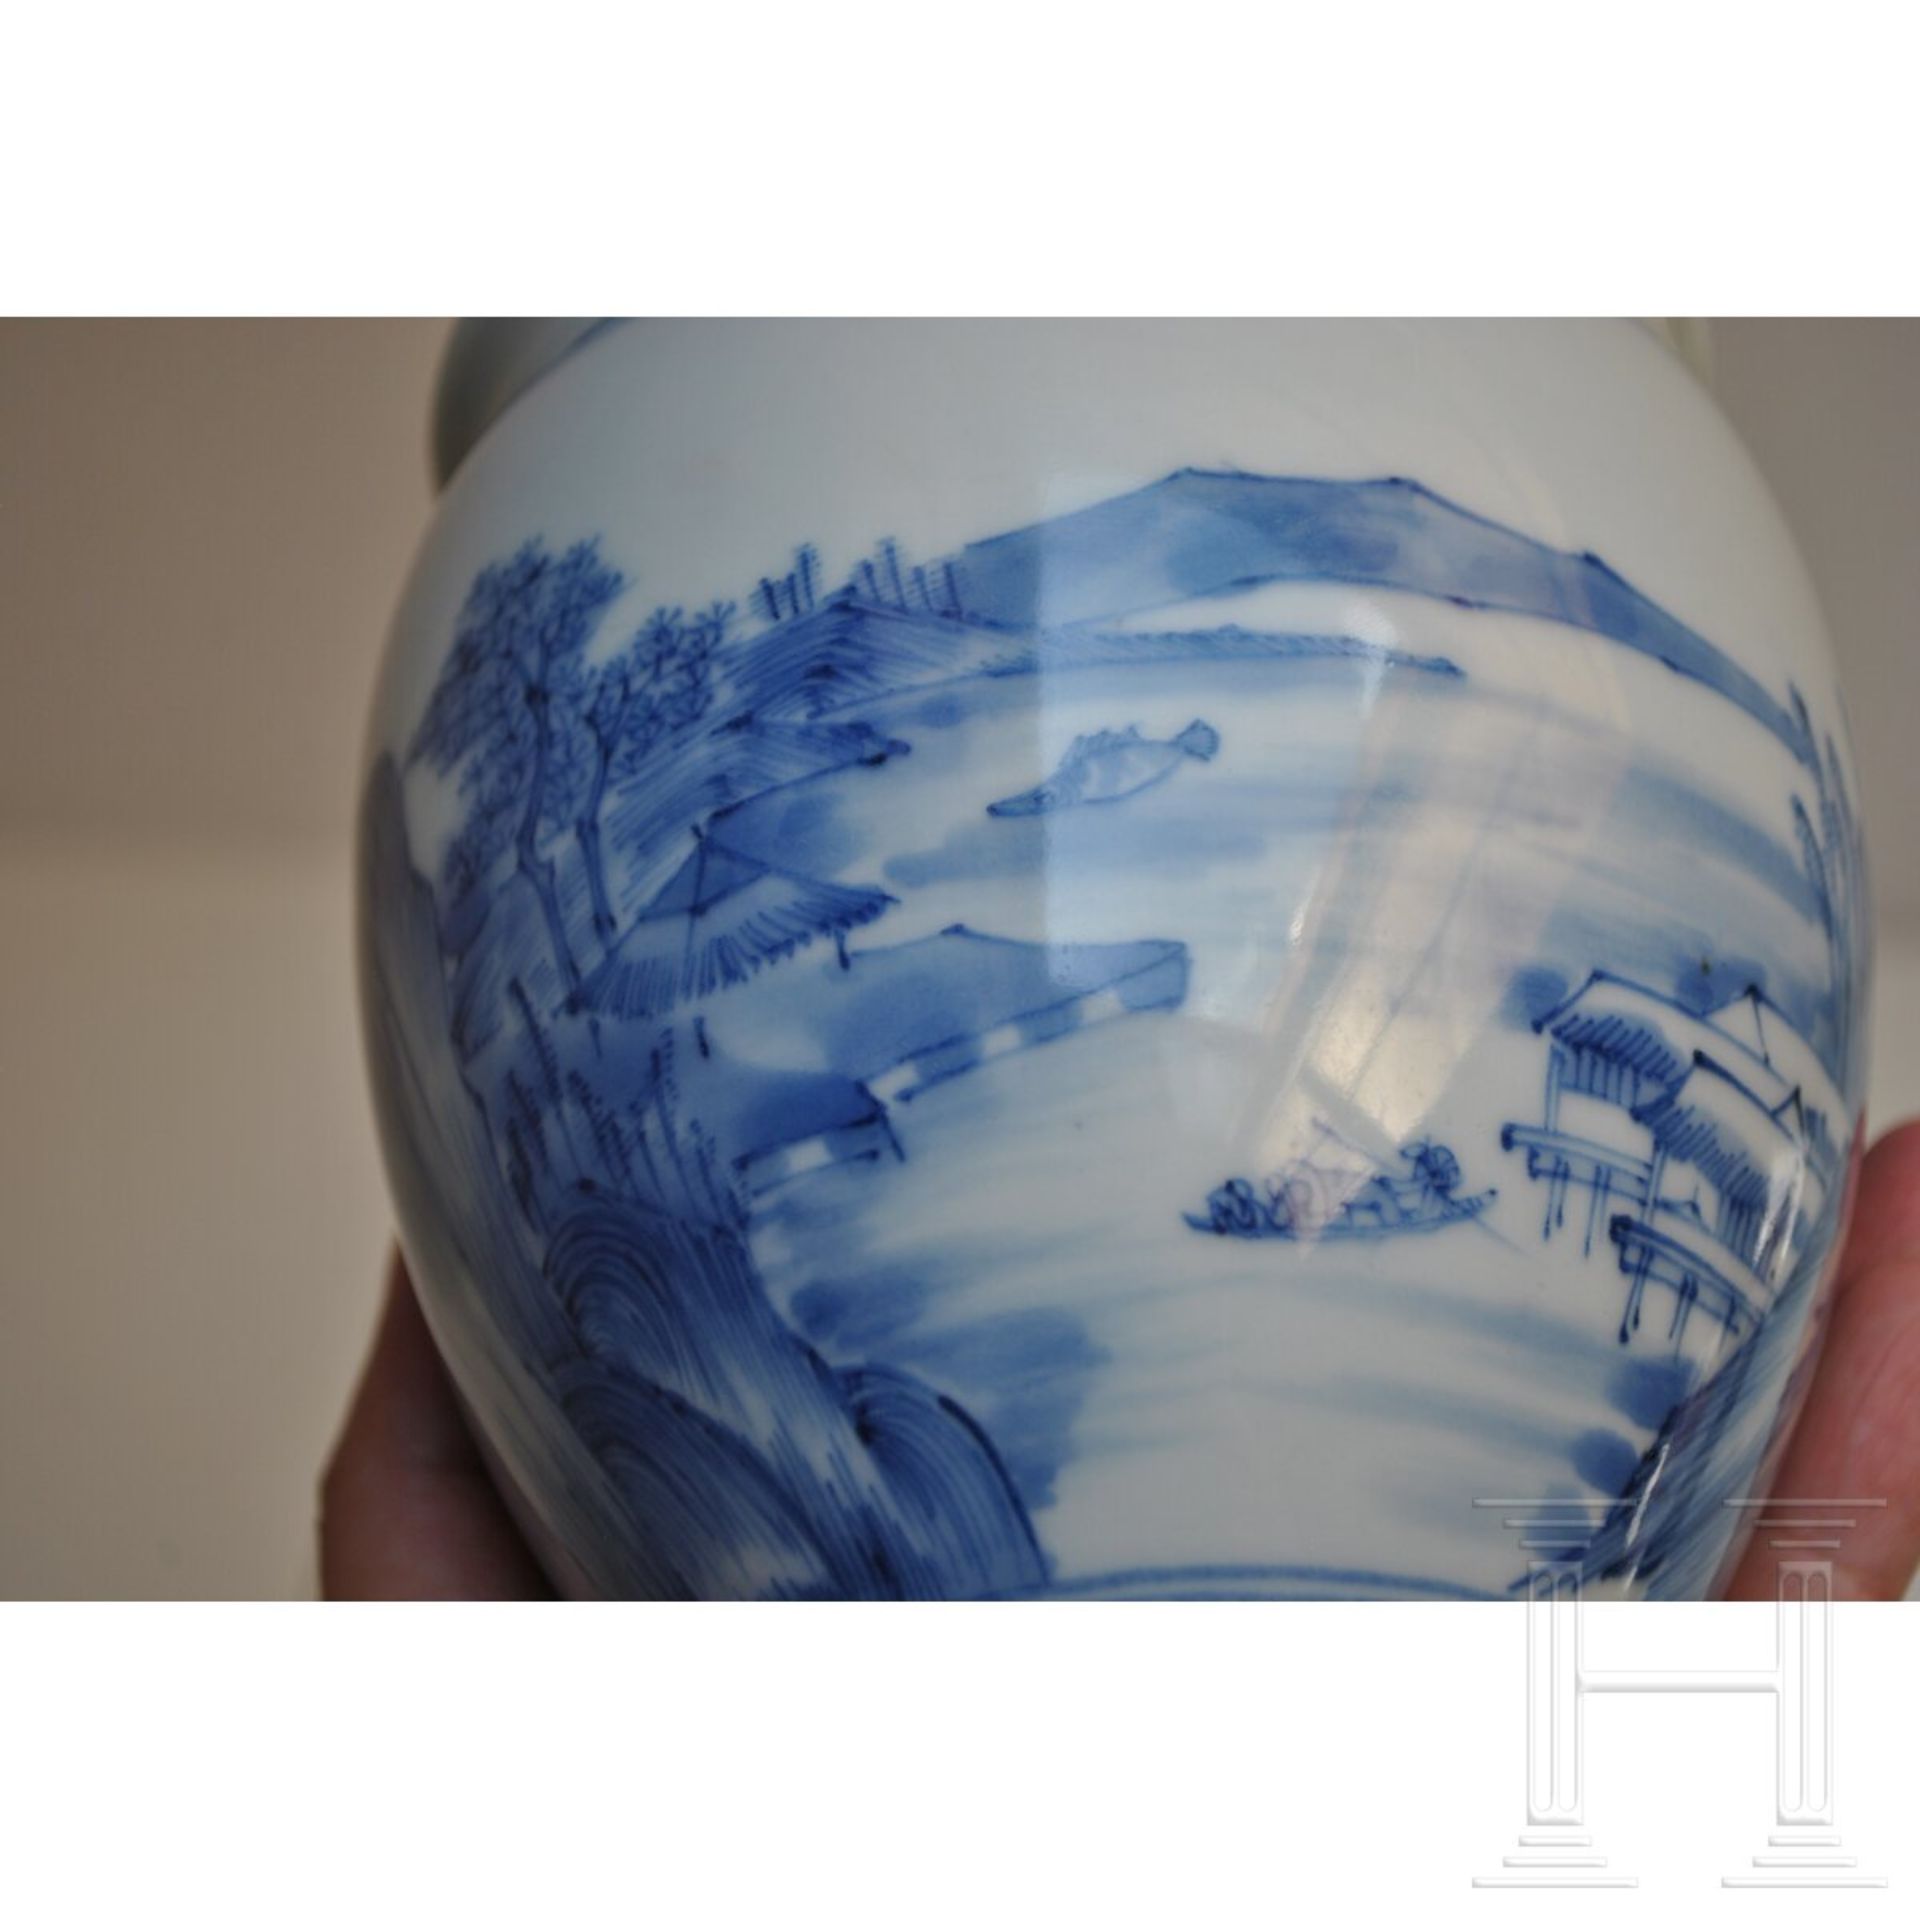 Blau-weiße Vase mit Seenlandschaft, China, wohl Kangxi-Periode (18. Jhdt.) - Bild 9 aus 15